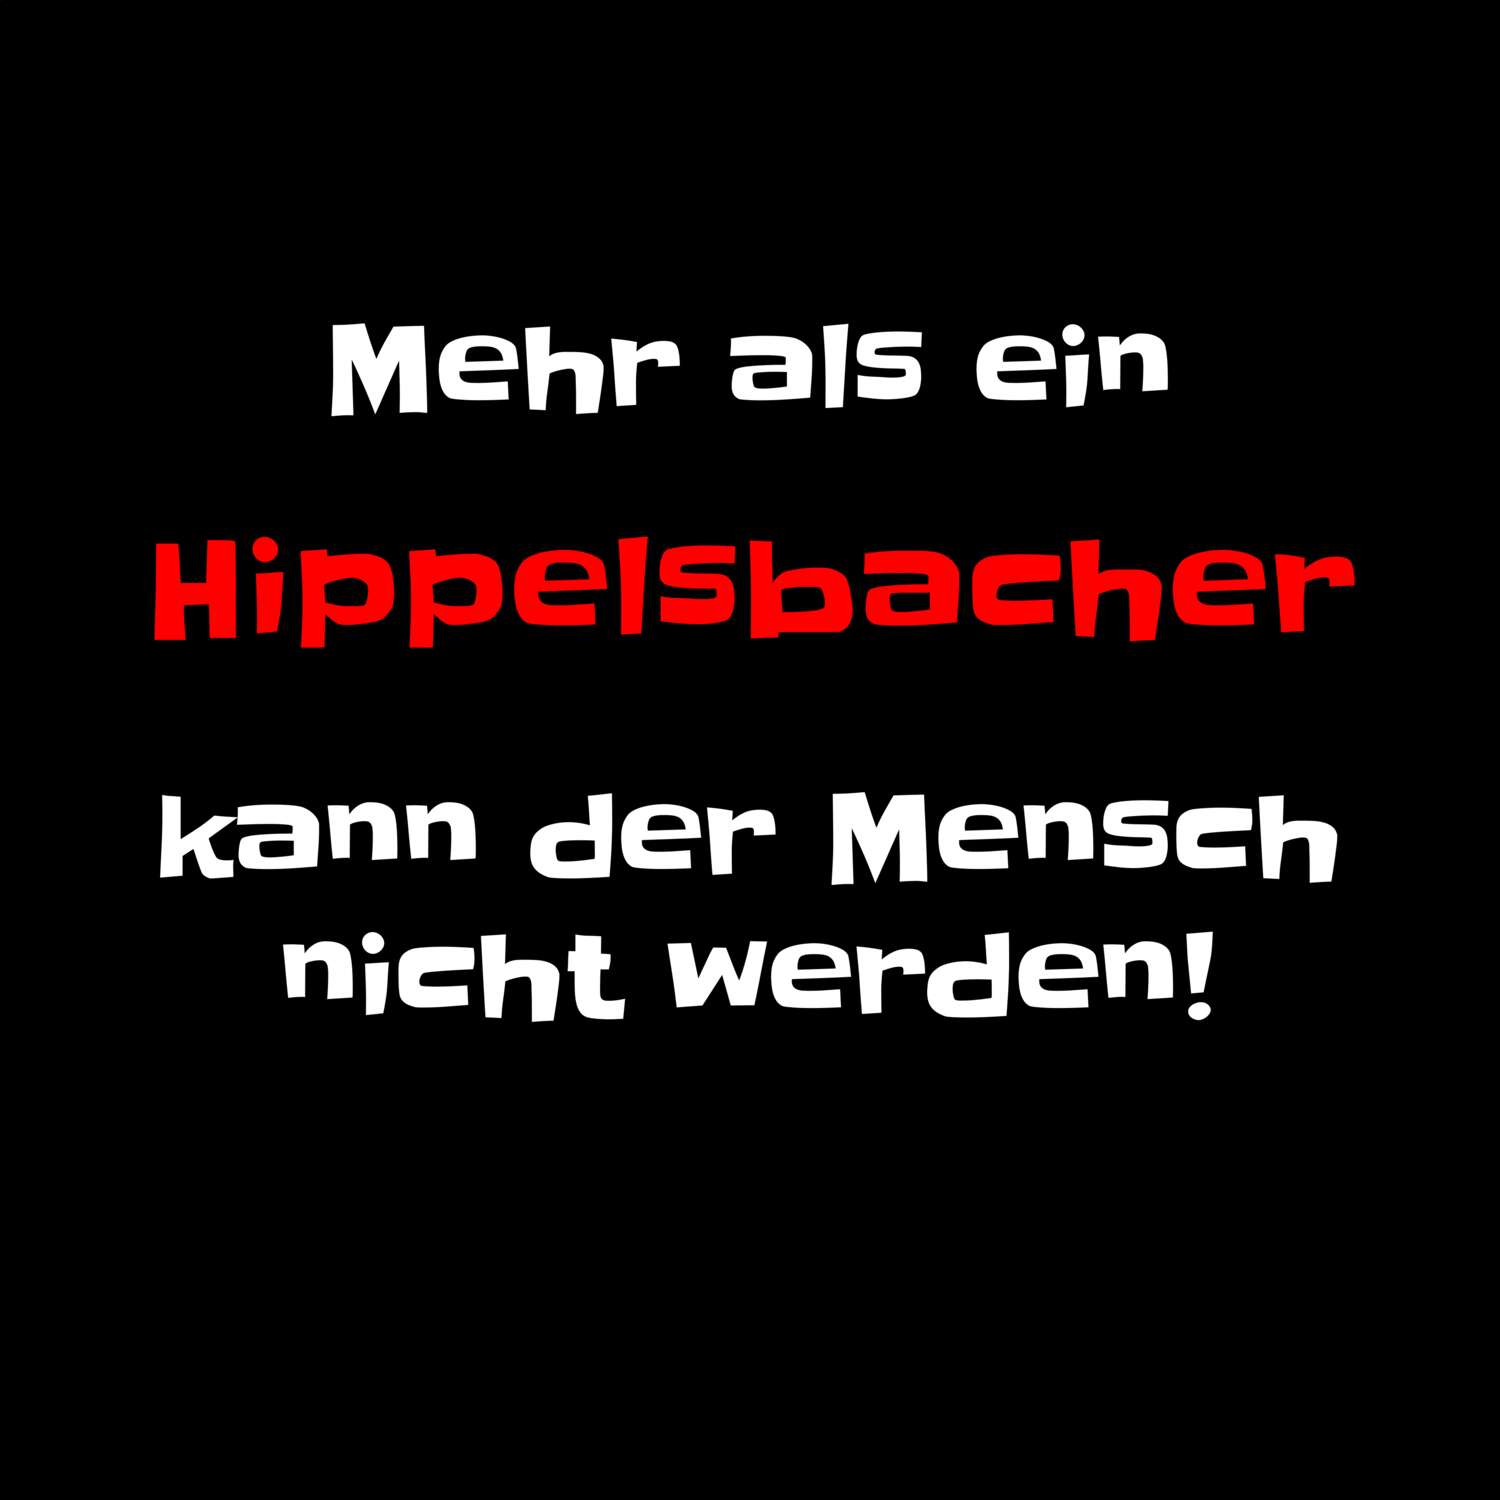 Hippelsbach T-Shirt »Mehr als ein«